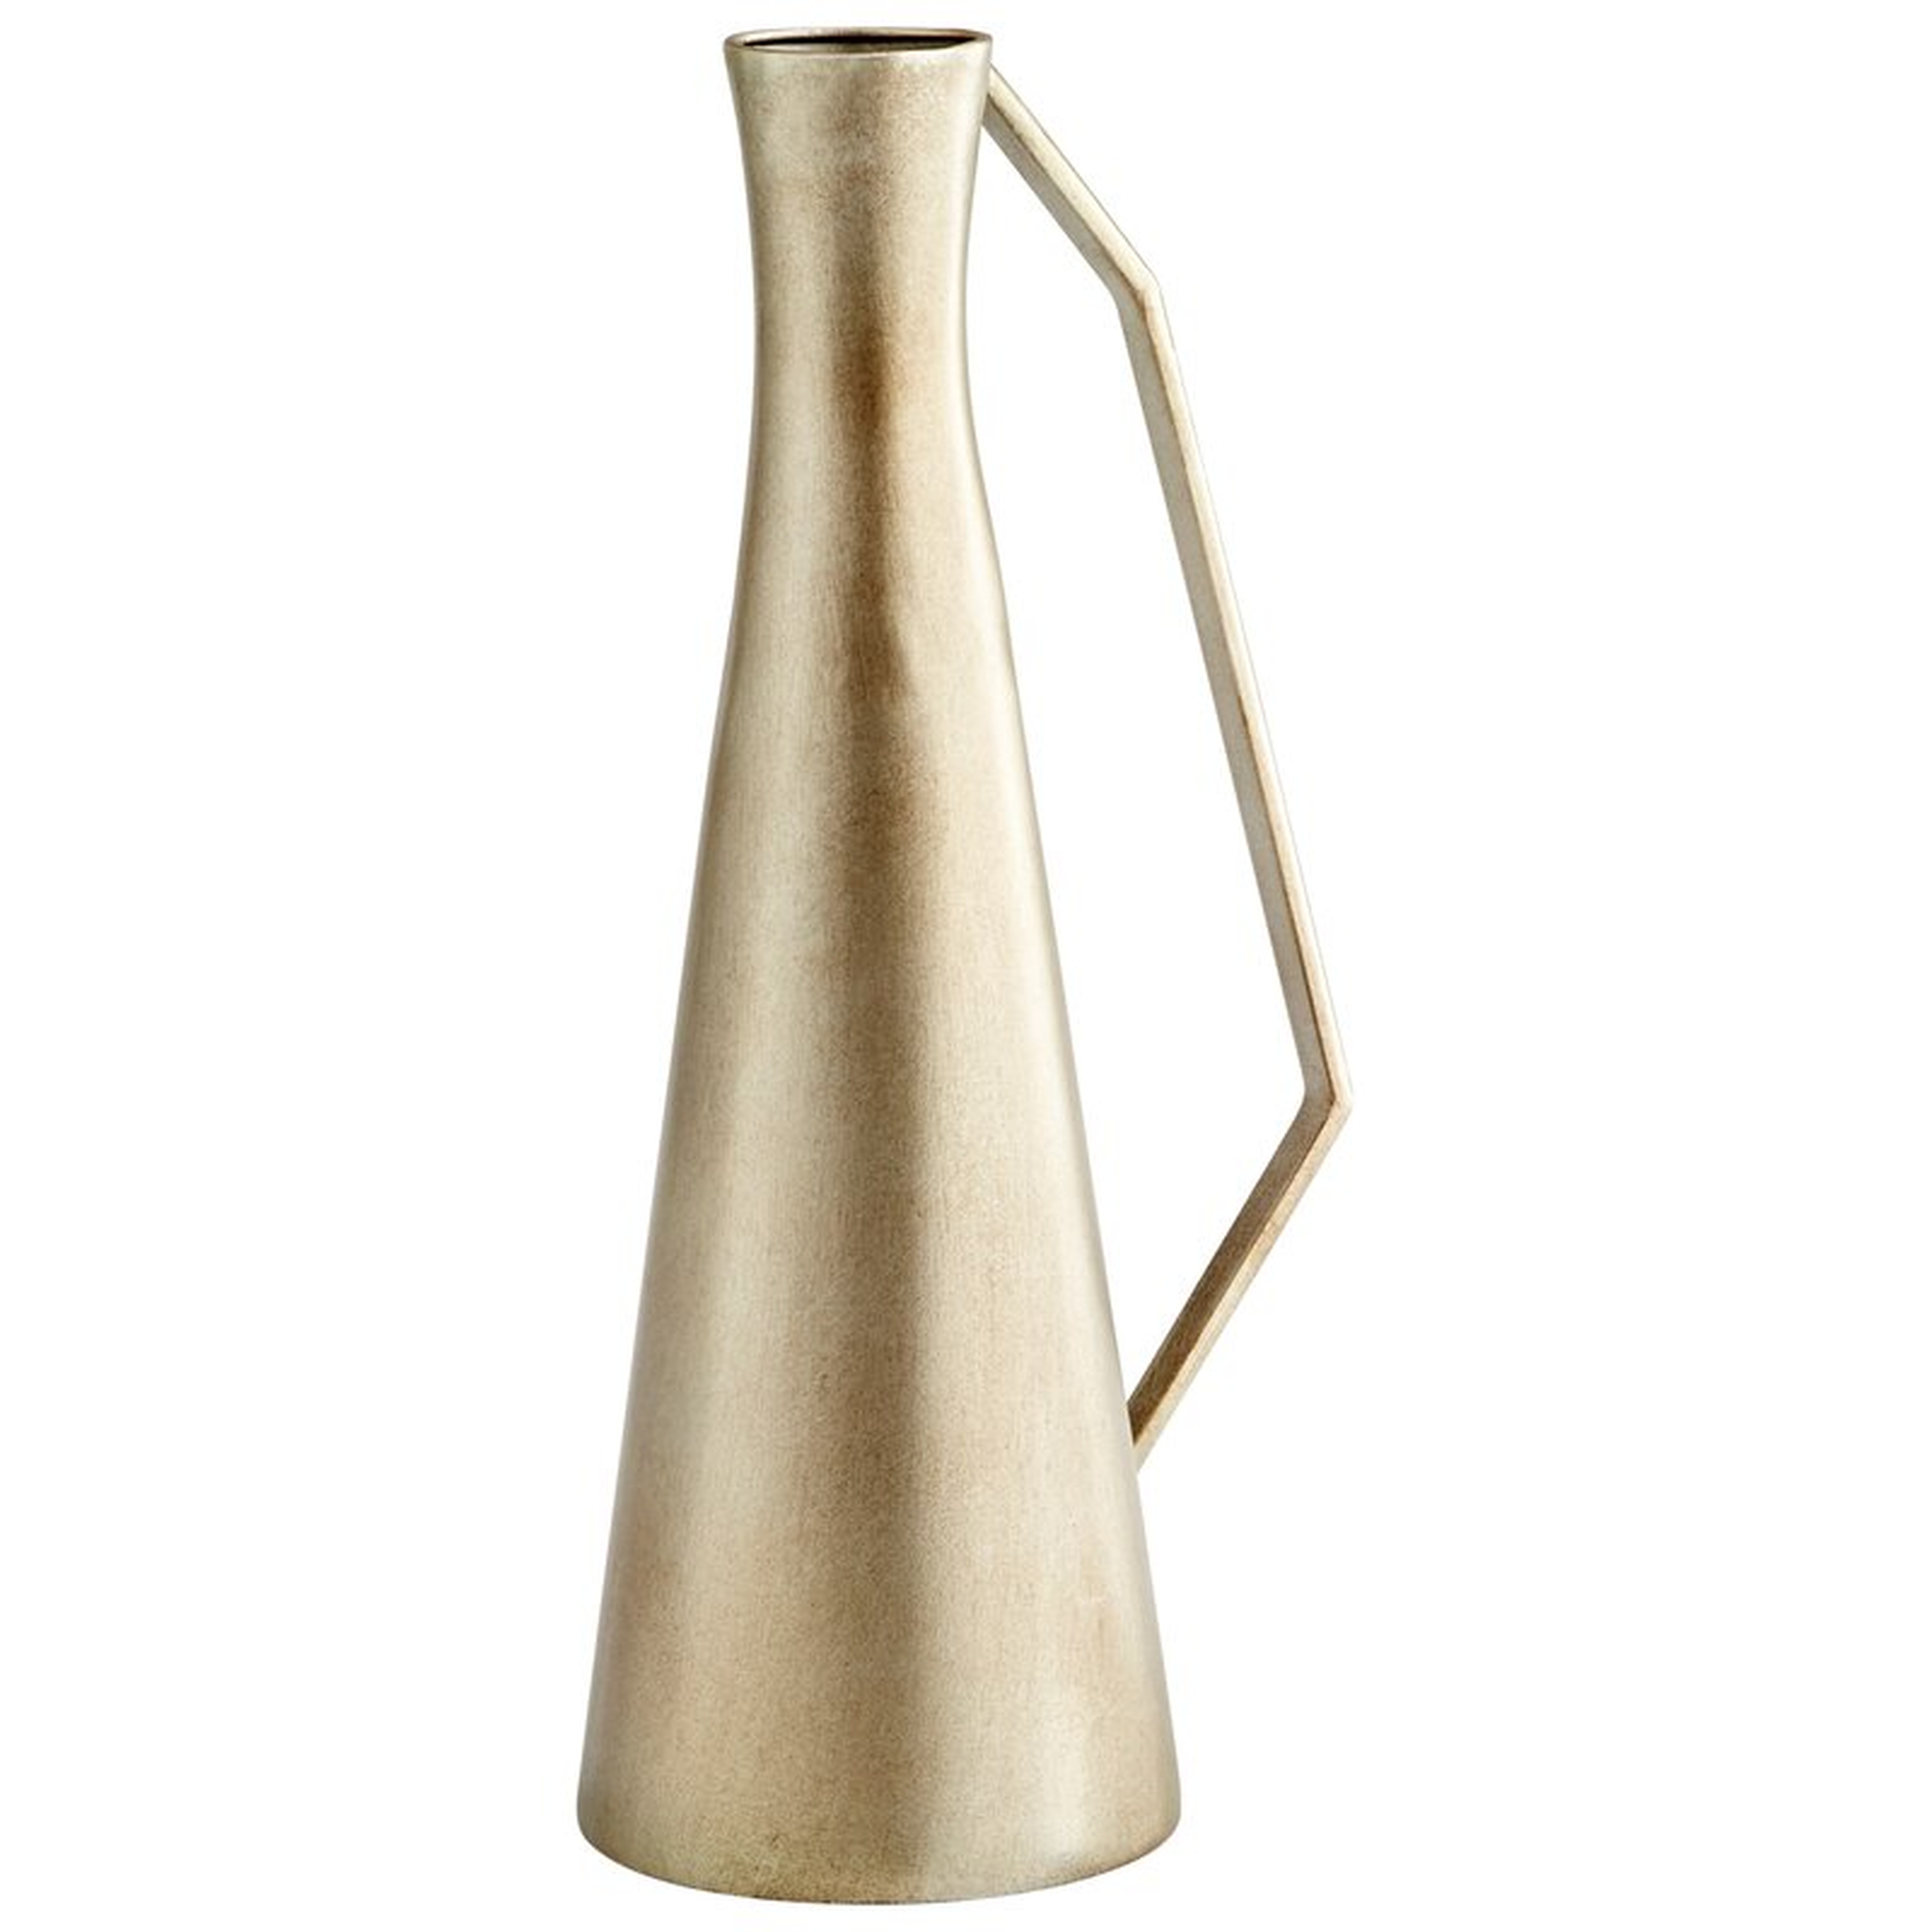 Cyan Design Dhaka Nickel Metal Table Vase - Perigold